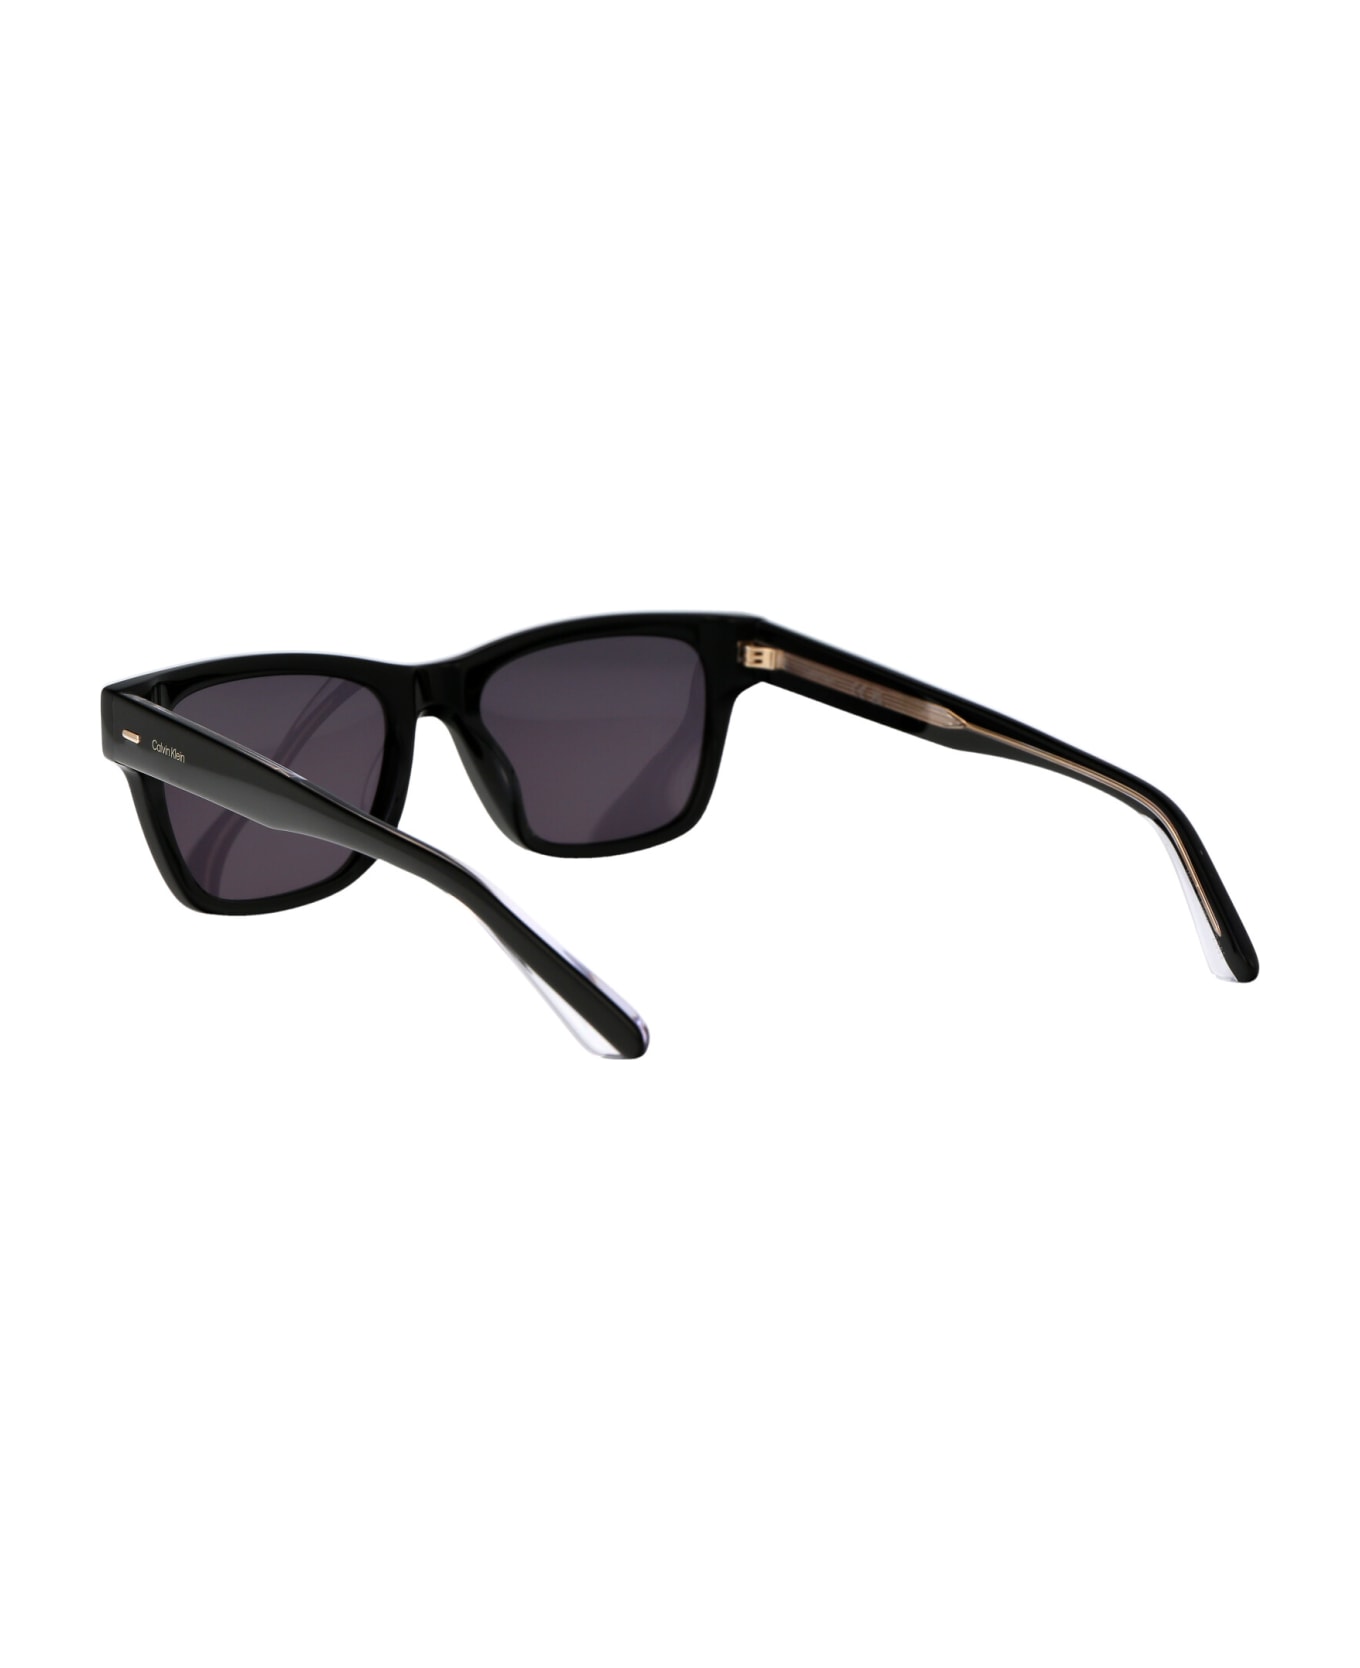 Calvin Klein Ck21528s Sunglasses - 001 BLACK サングラス